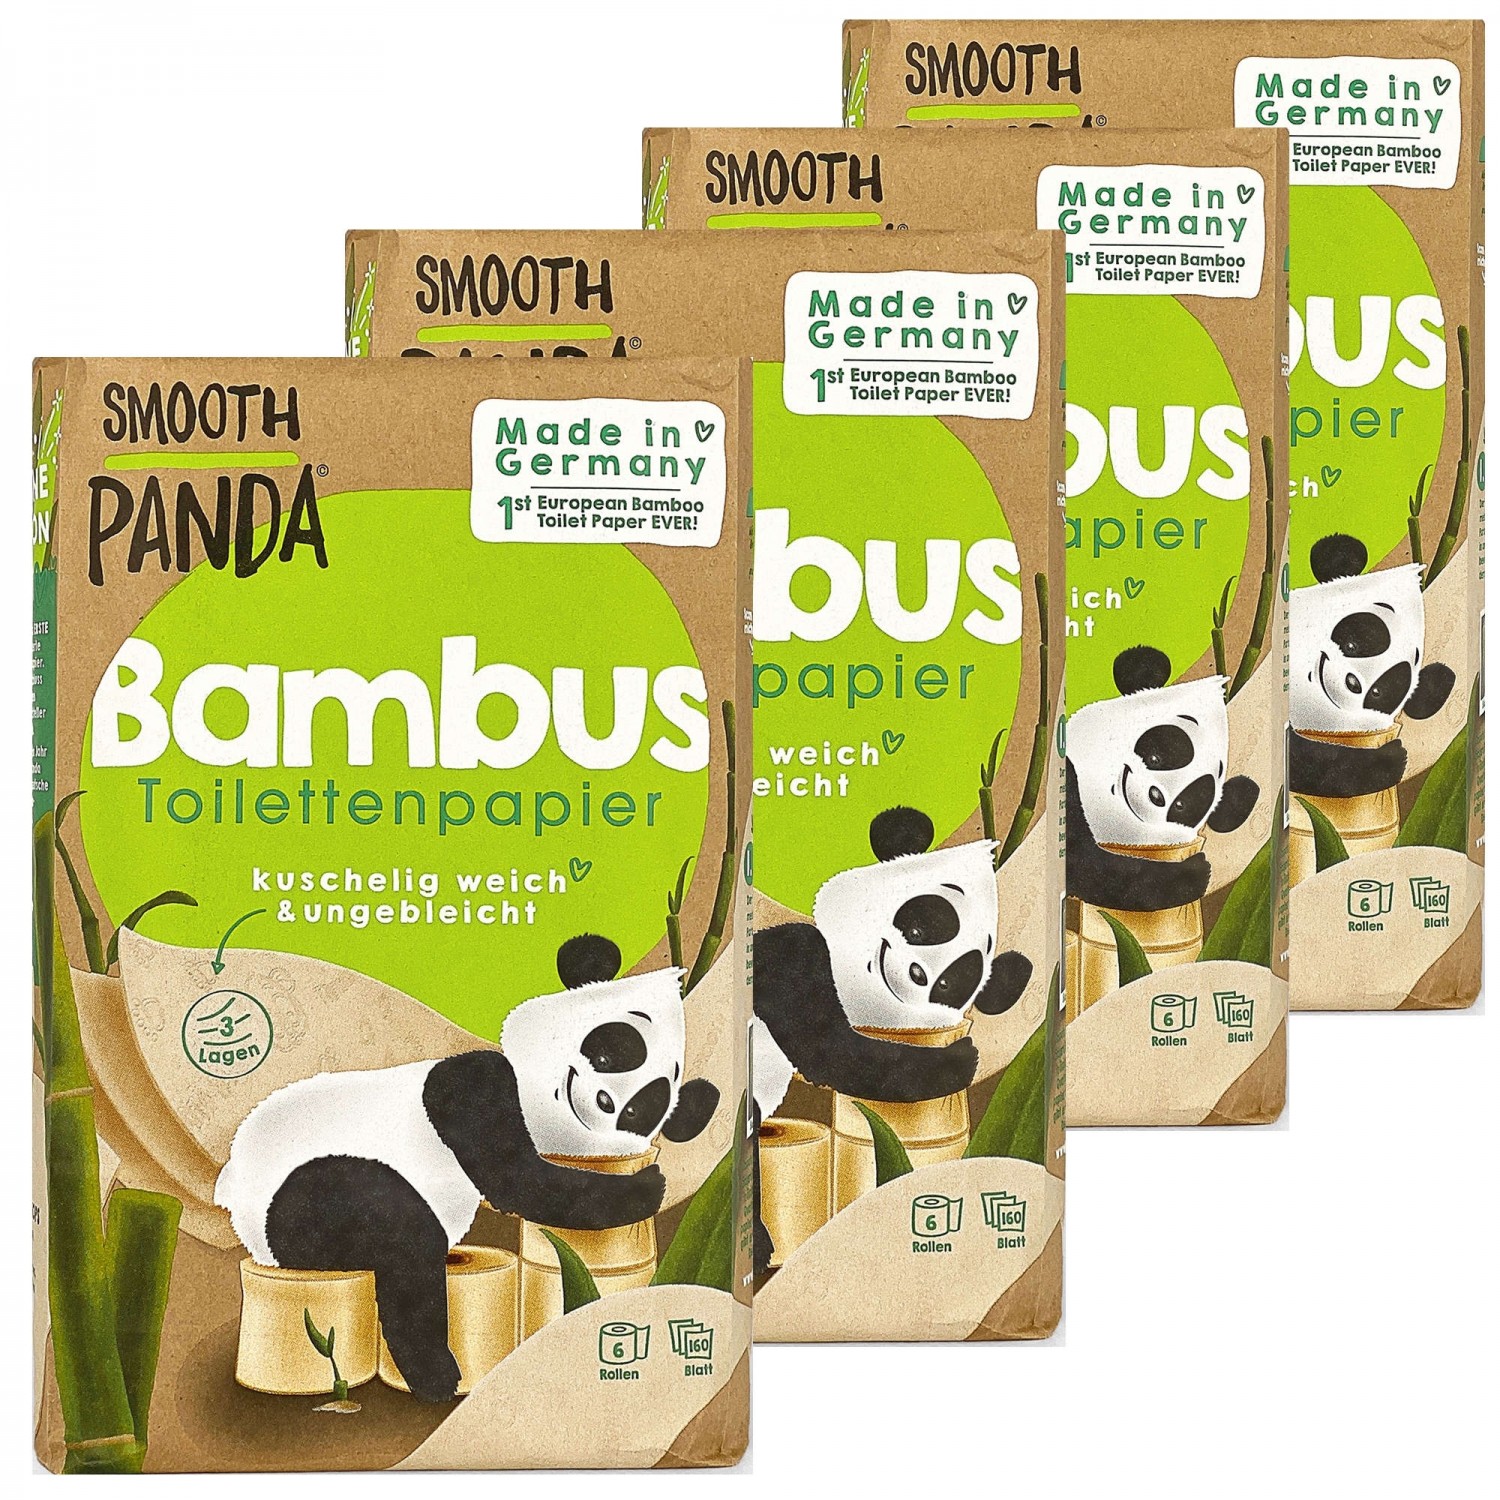 Bambus Toilettenpapier aus Deutschland » Smooth Panda